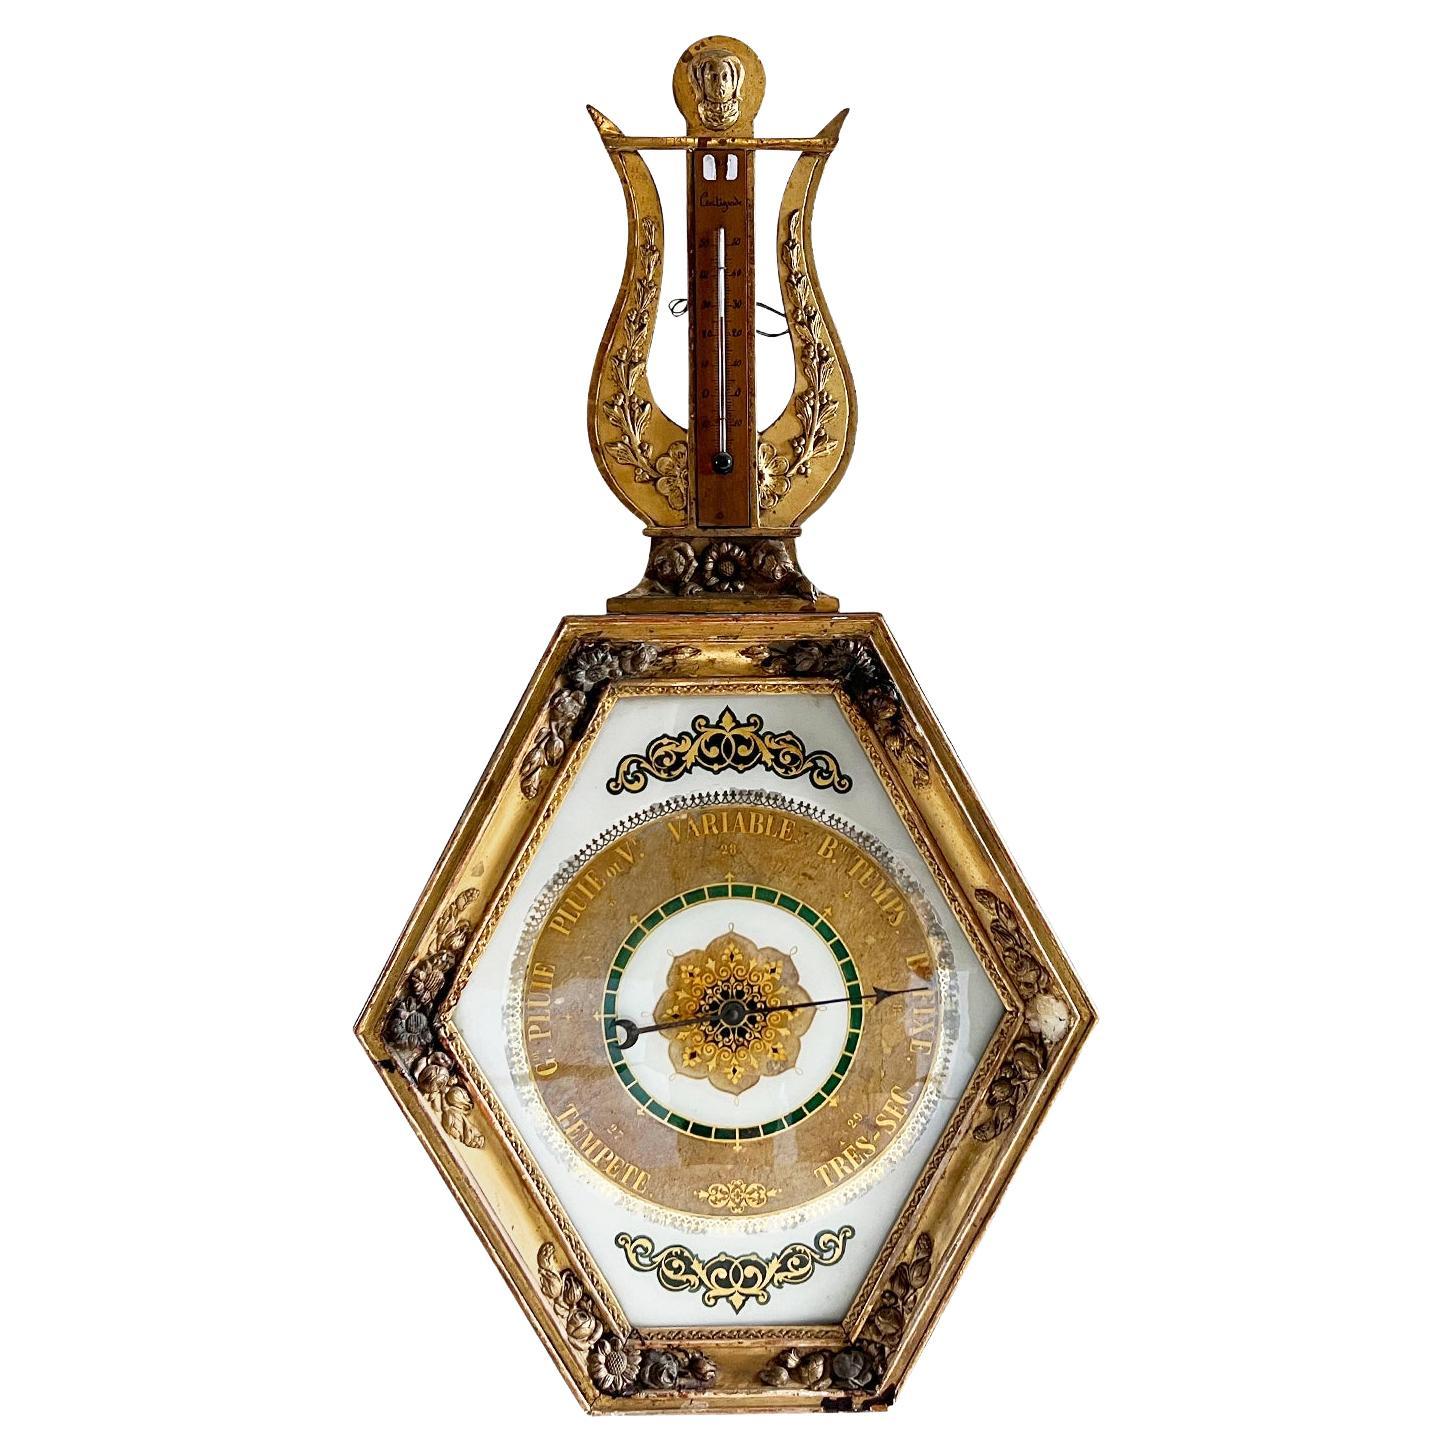 Baromètre français du 18ème siècle en bois doré et or - thermomètre parisien ancien en vente